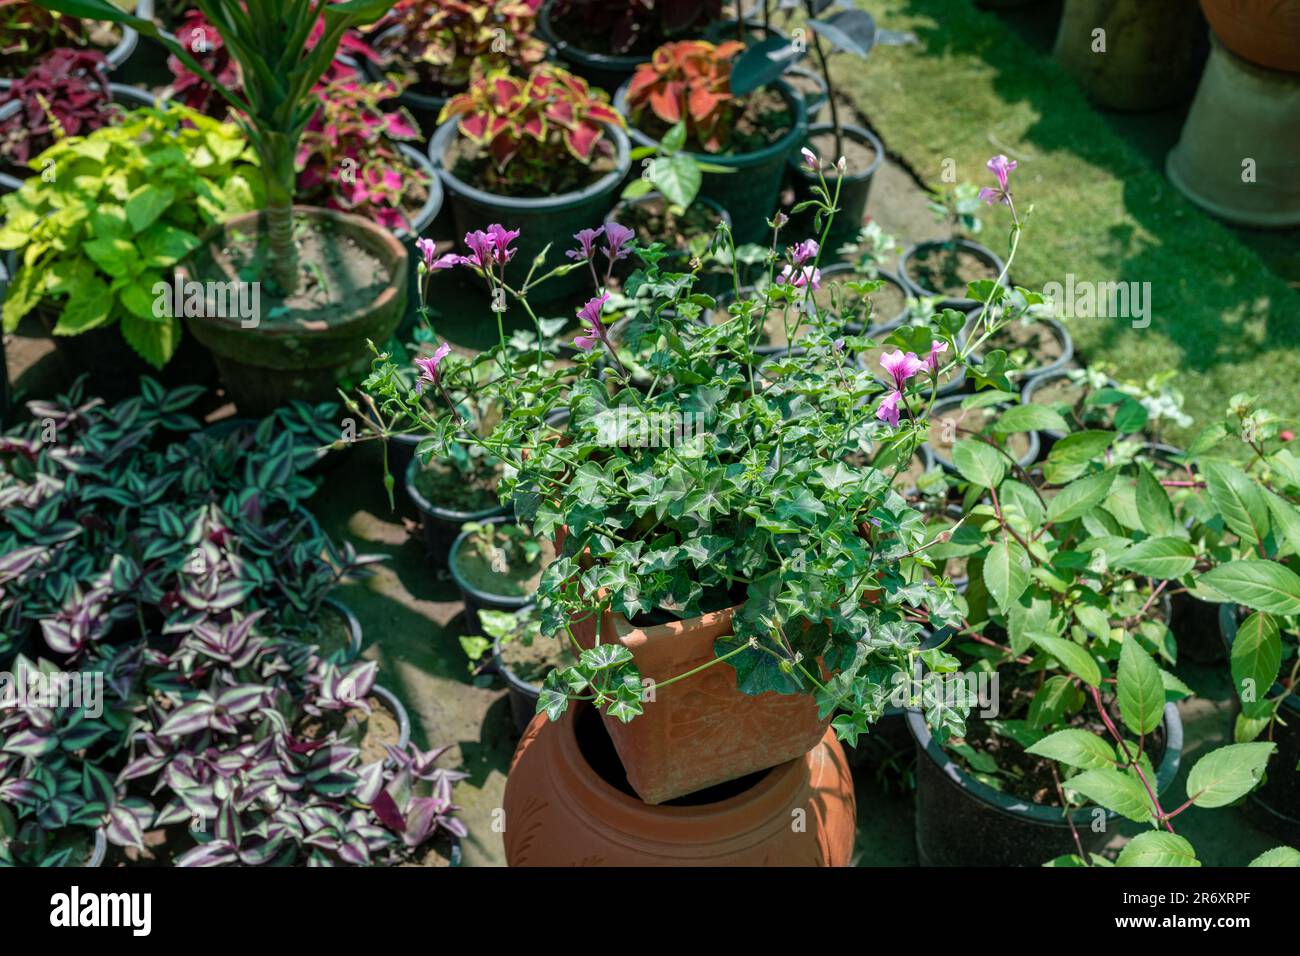 Pelargonium peltatum ivy geranium in a pot Stock Photo